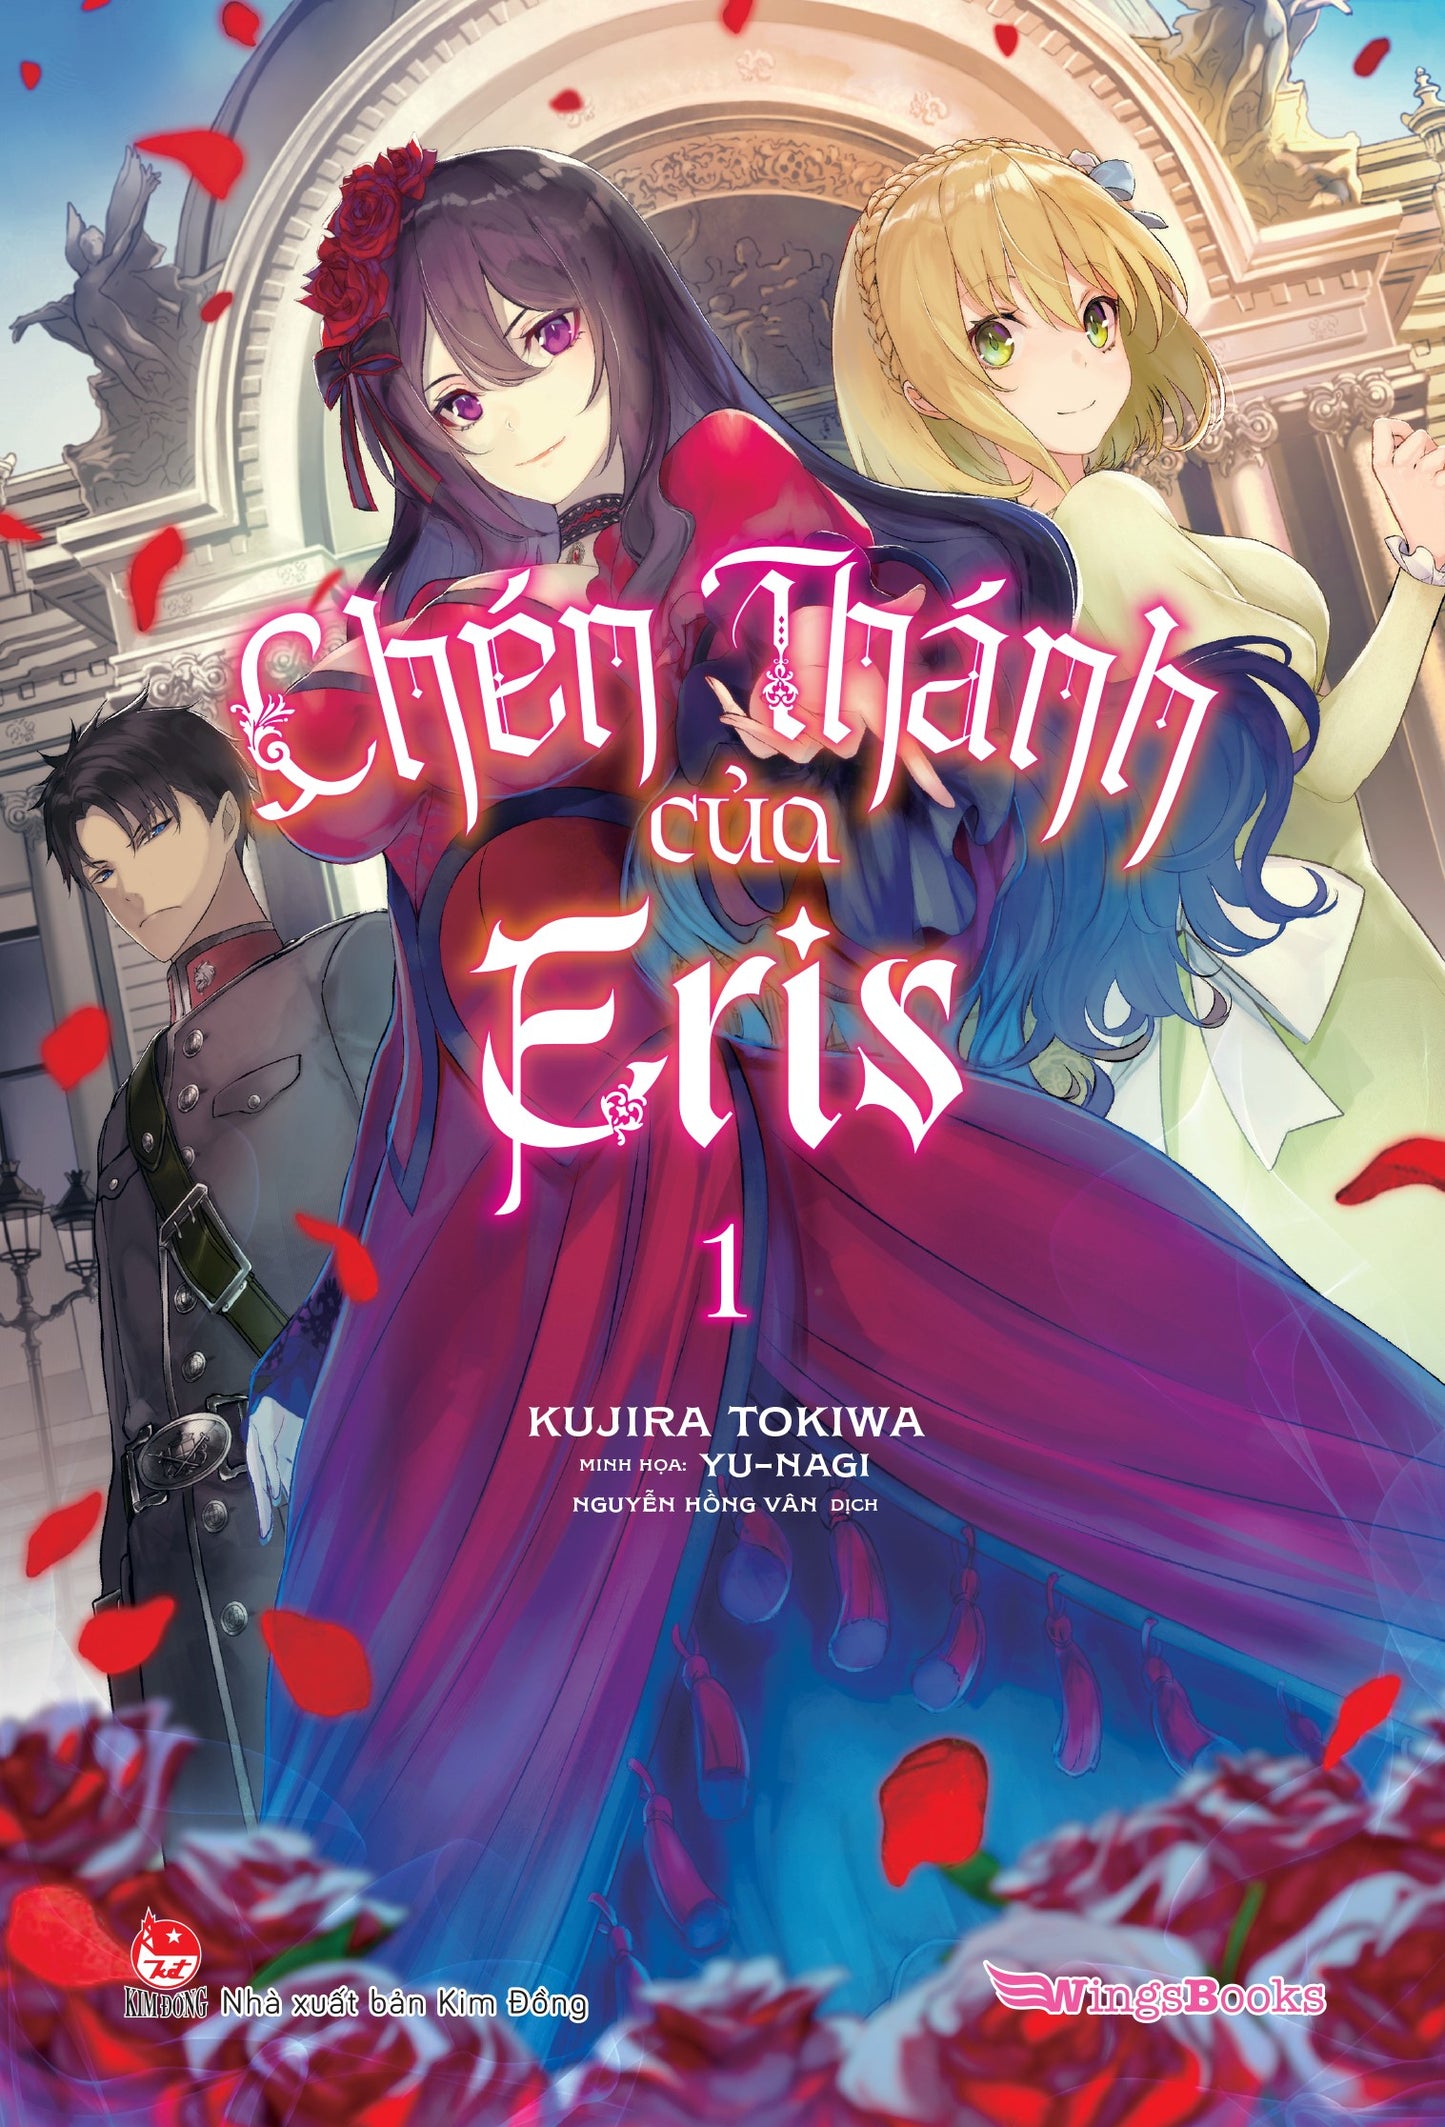 Chén thánh của Eris - Tập 1 (Light Novel) NEW